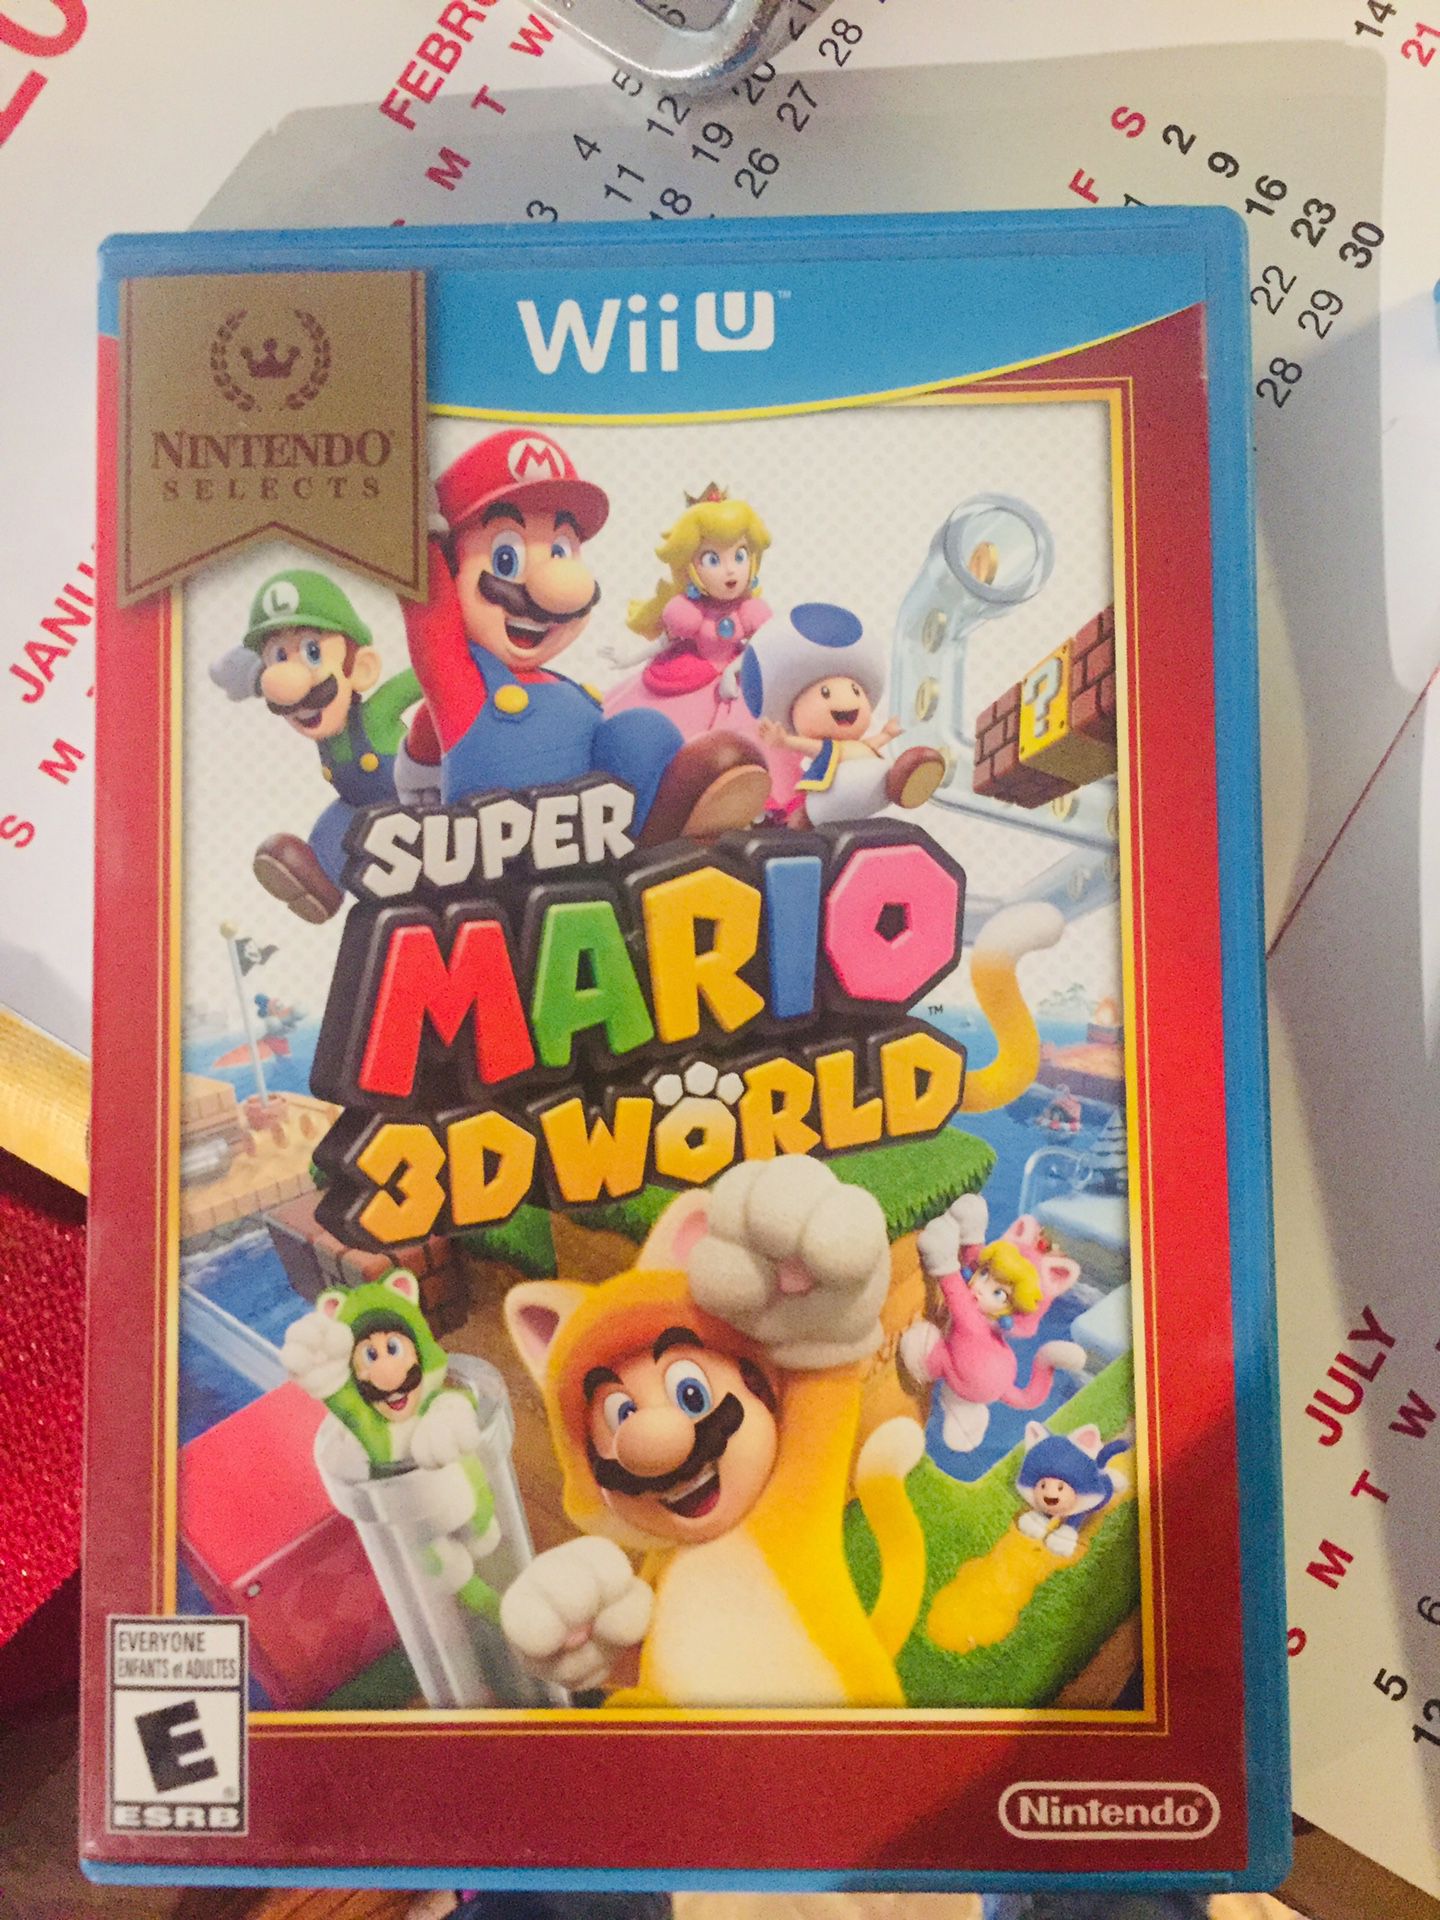 Mario Wii U games